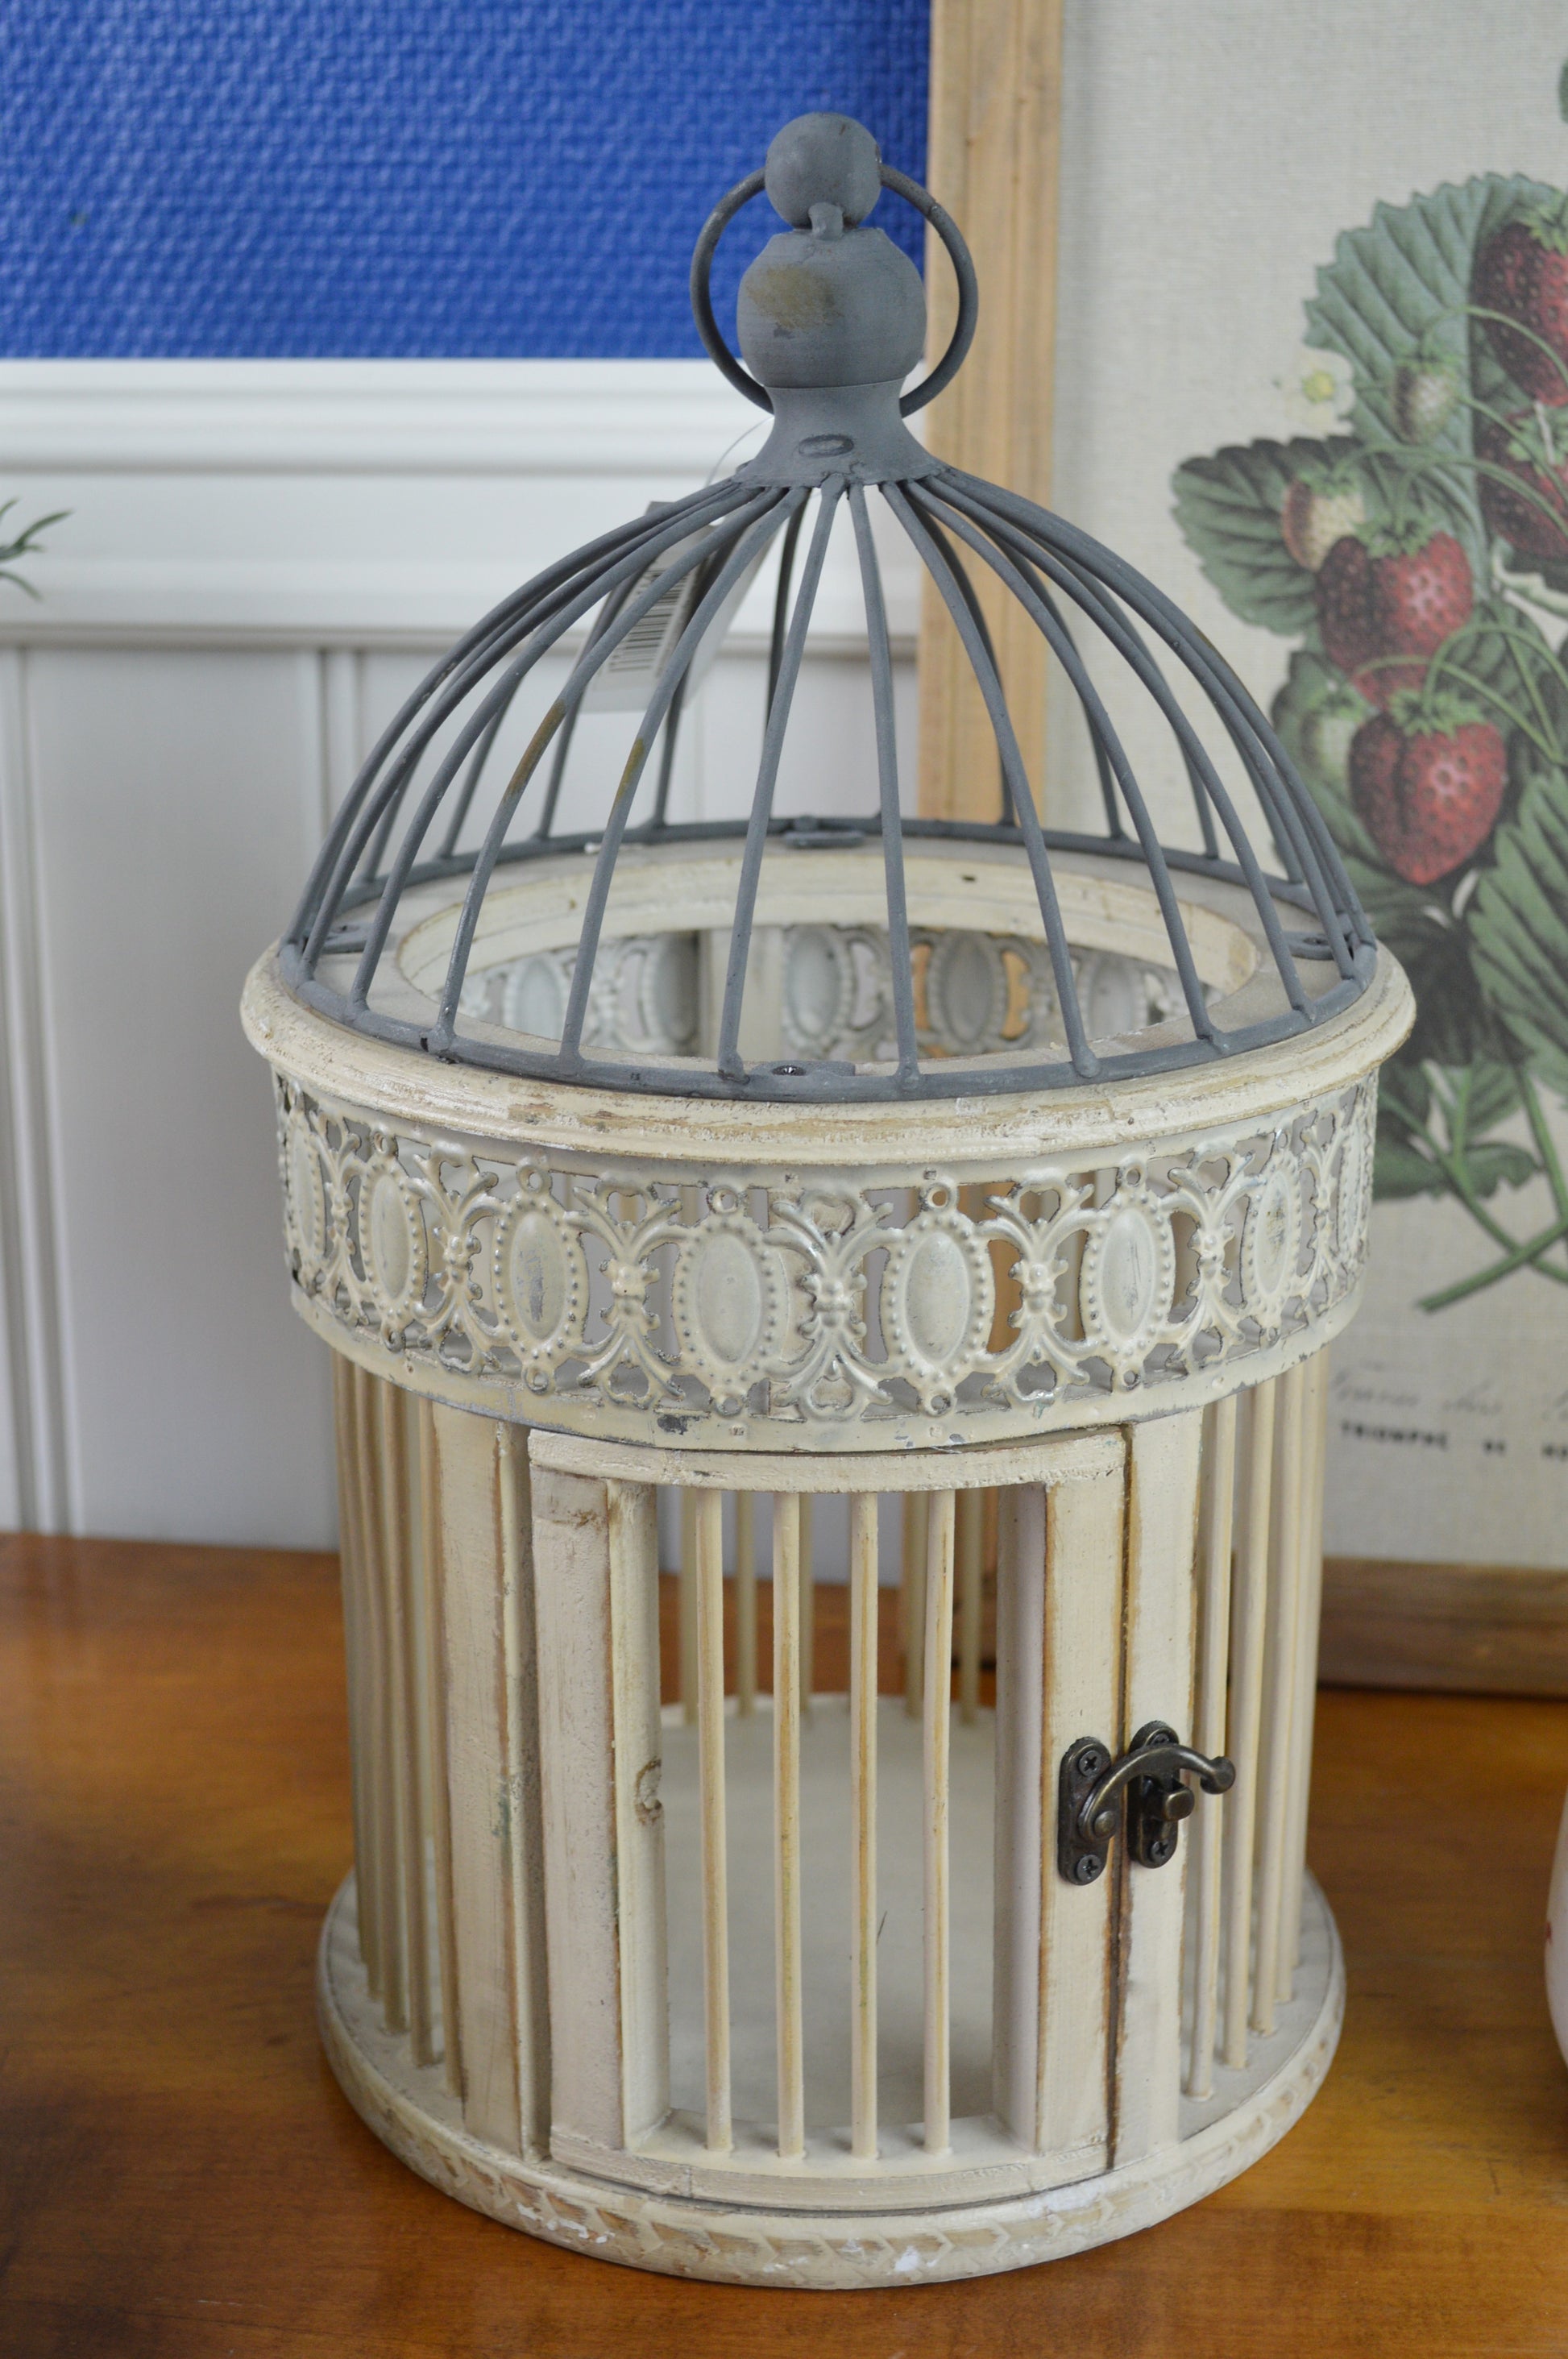 En vacker fågelbur med dekorativ metallkant i en romantisk vintage stil.  Mått: H35,5/Ø20,5 cm  Material: Metall, fanér, bambu